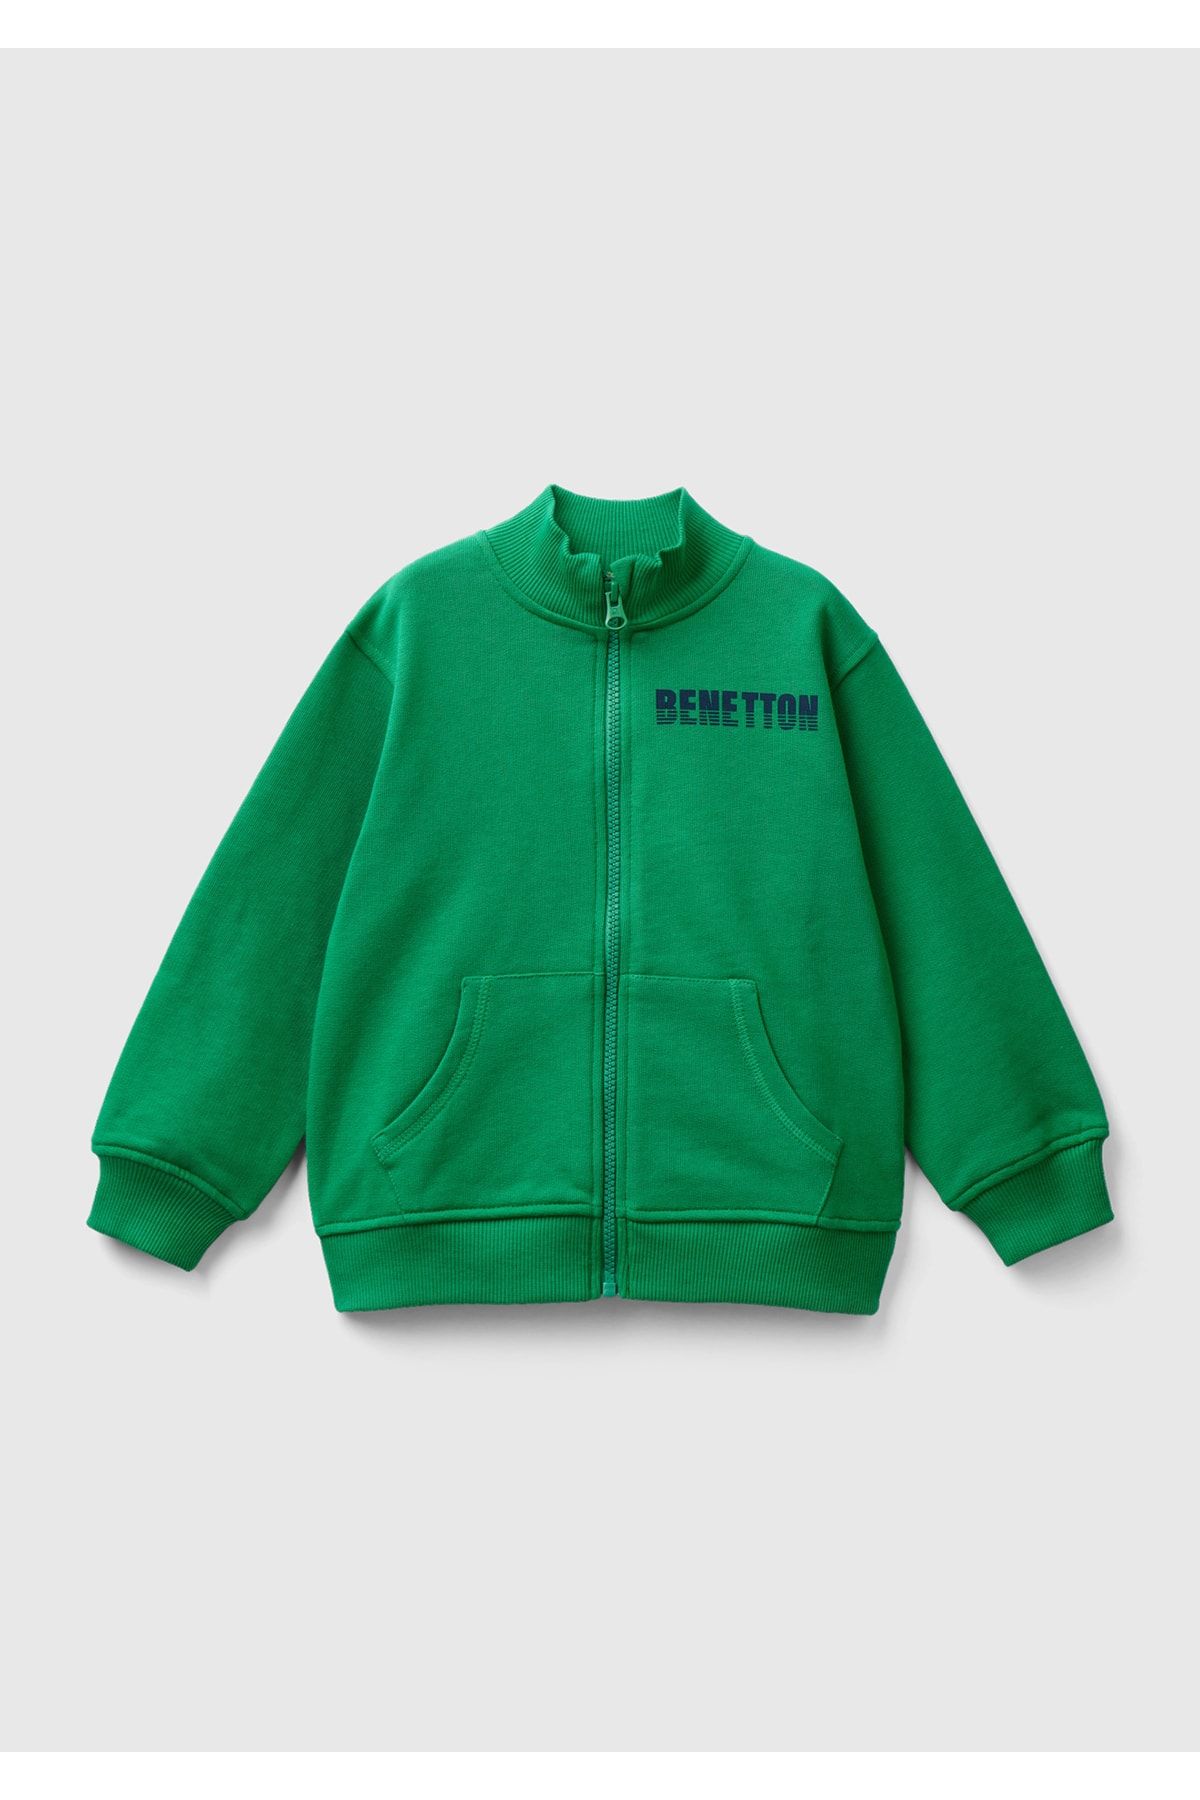 United Colors of Benetton Erkek Çocuk Yeşil Benetton Logolu Dik Yaka Sweatshirt Yeşil